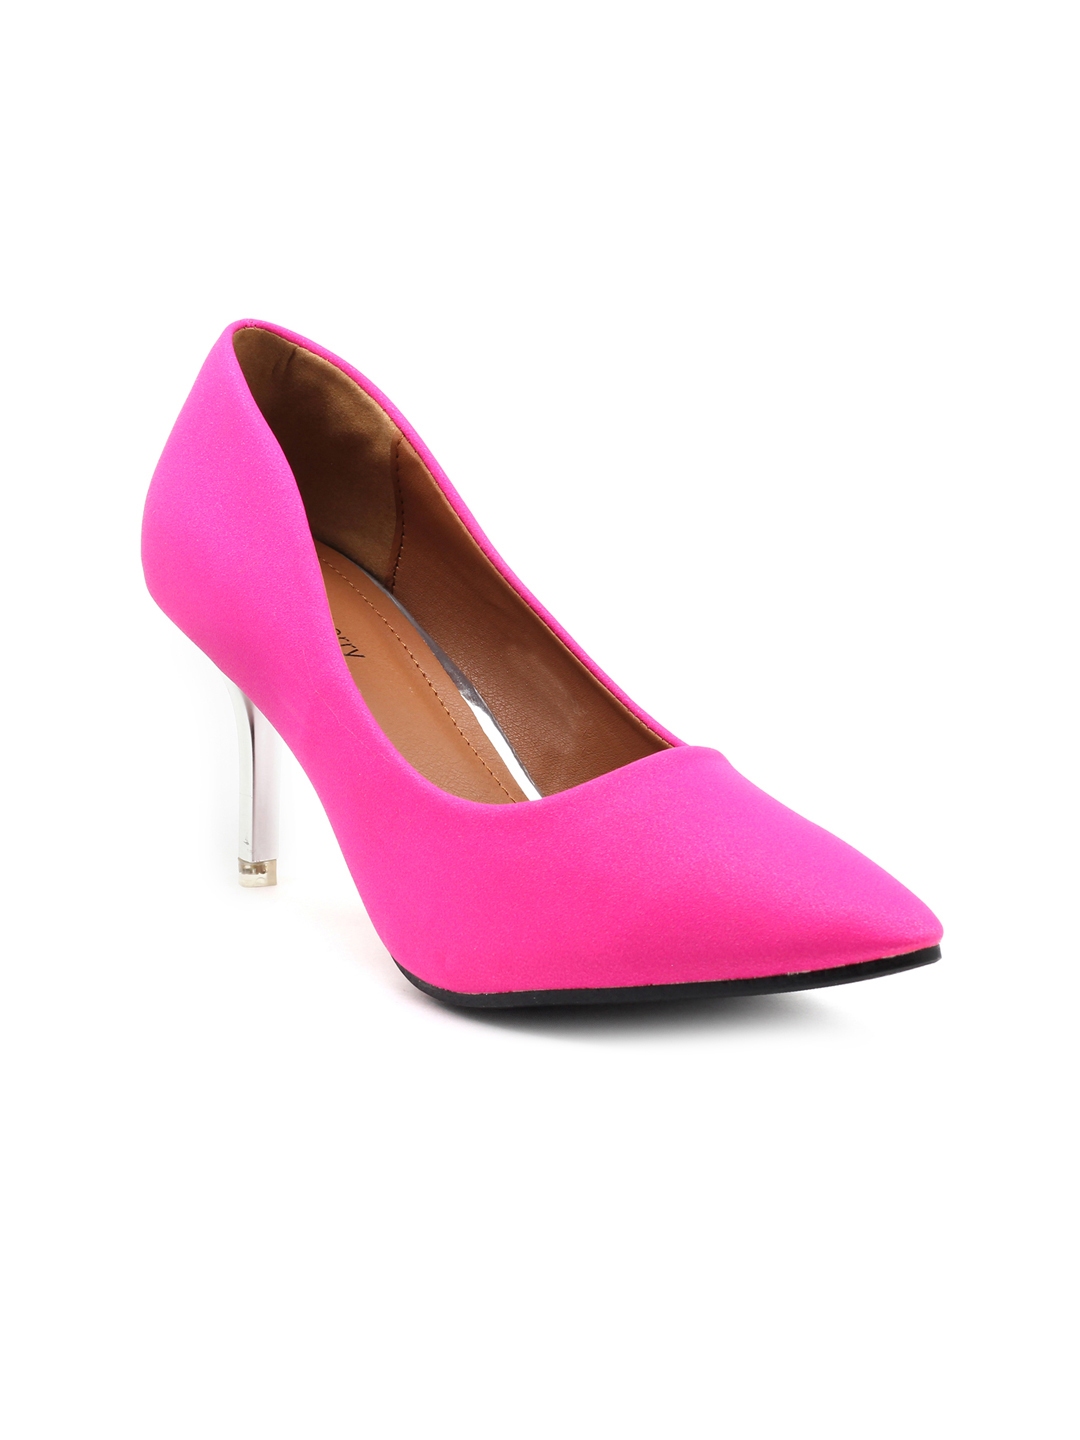 shuberry heels